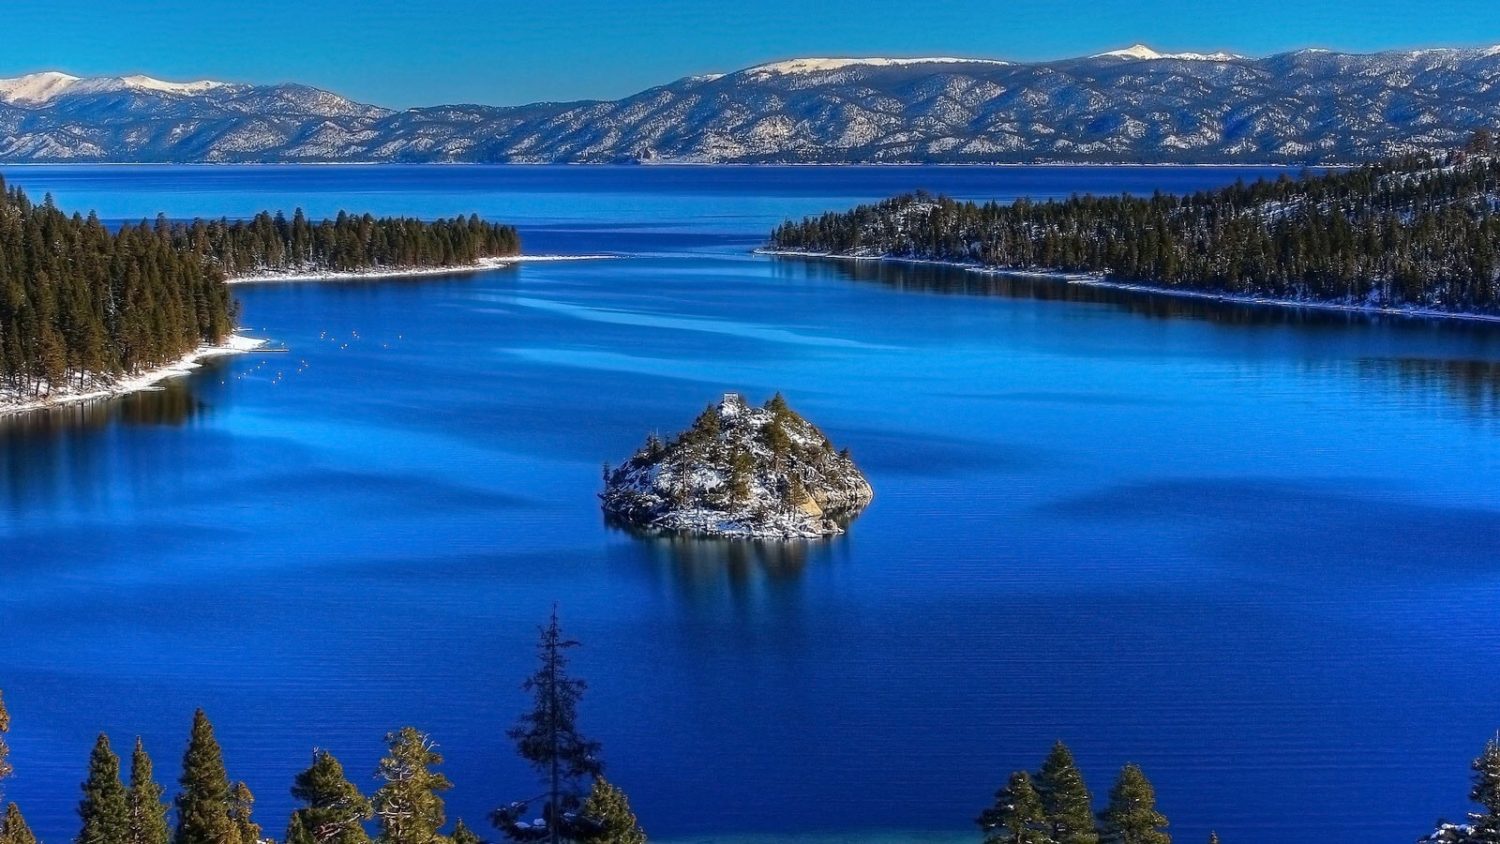 Tahoe, Terc, UC Davis, clean water, blue